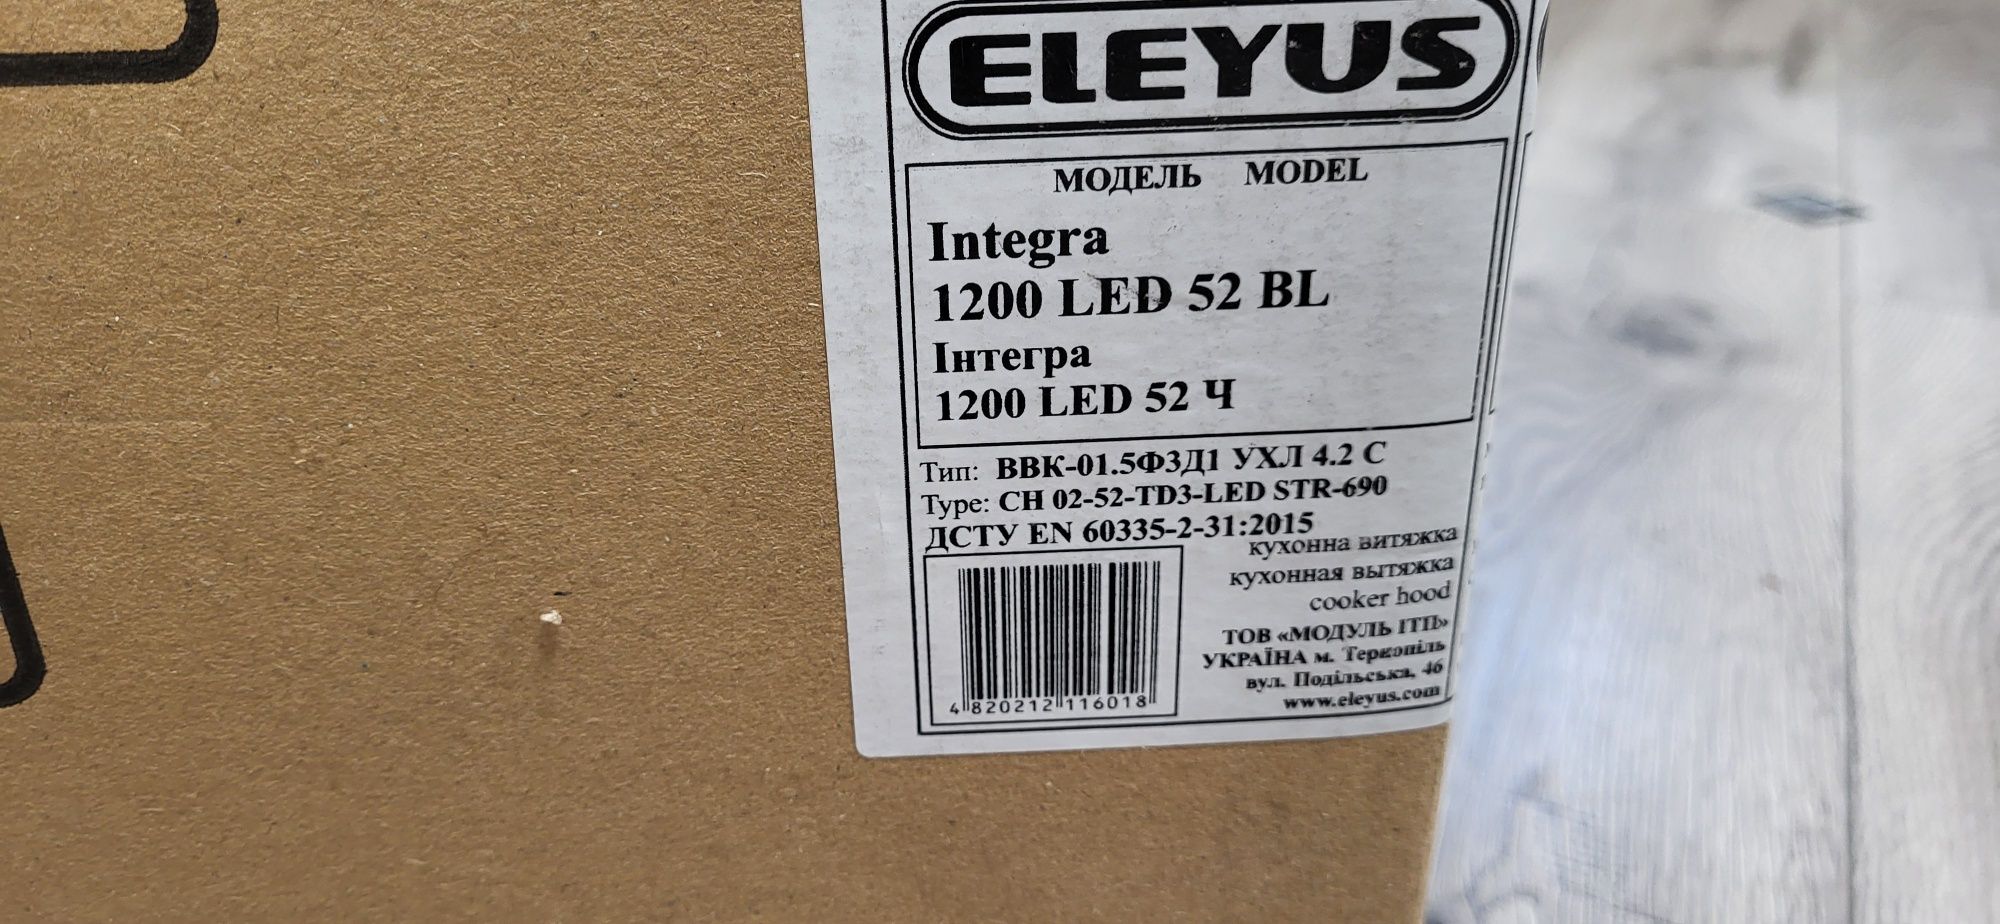 Кухонная вытяжка встраиваемая ELEYUS Integra 1200 LED 52 BL